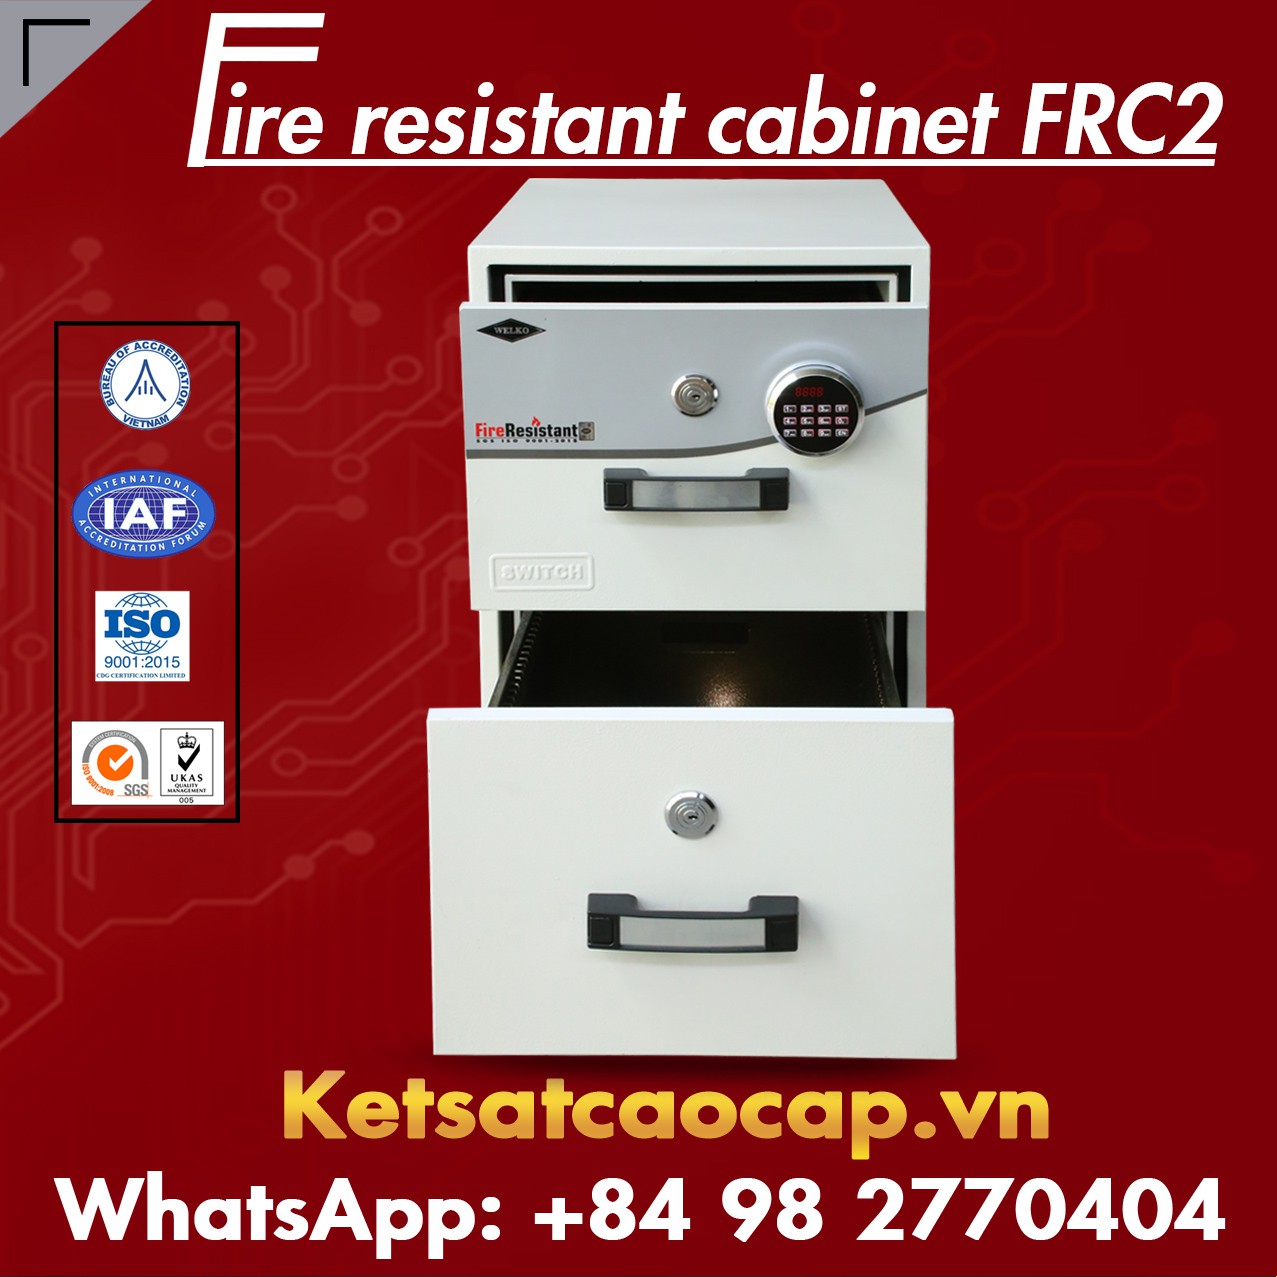 Tủ Chống Cháy Tốt FRC2 Giá Rẻ